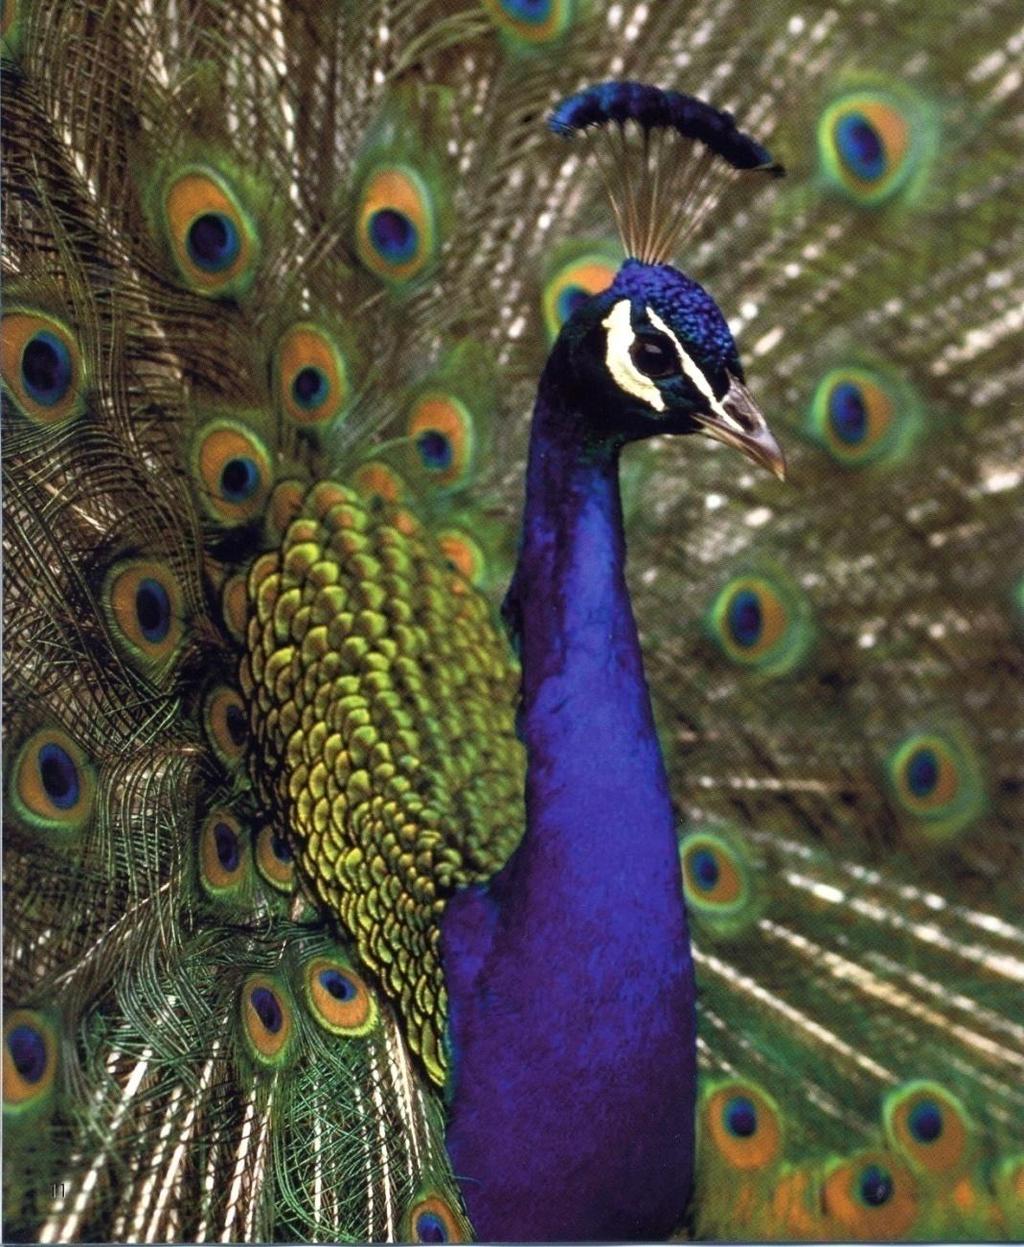 An Indian peacock extends